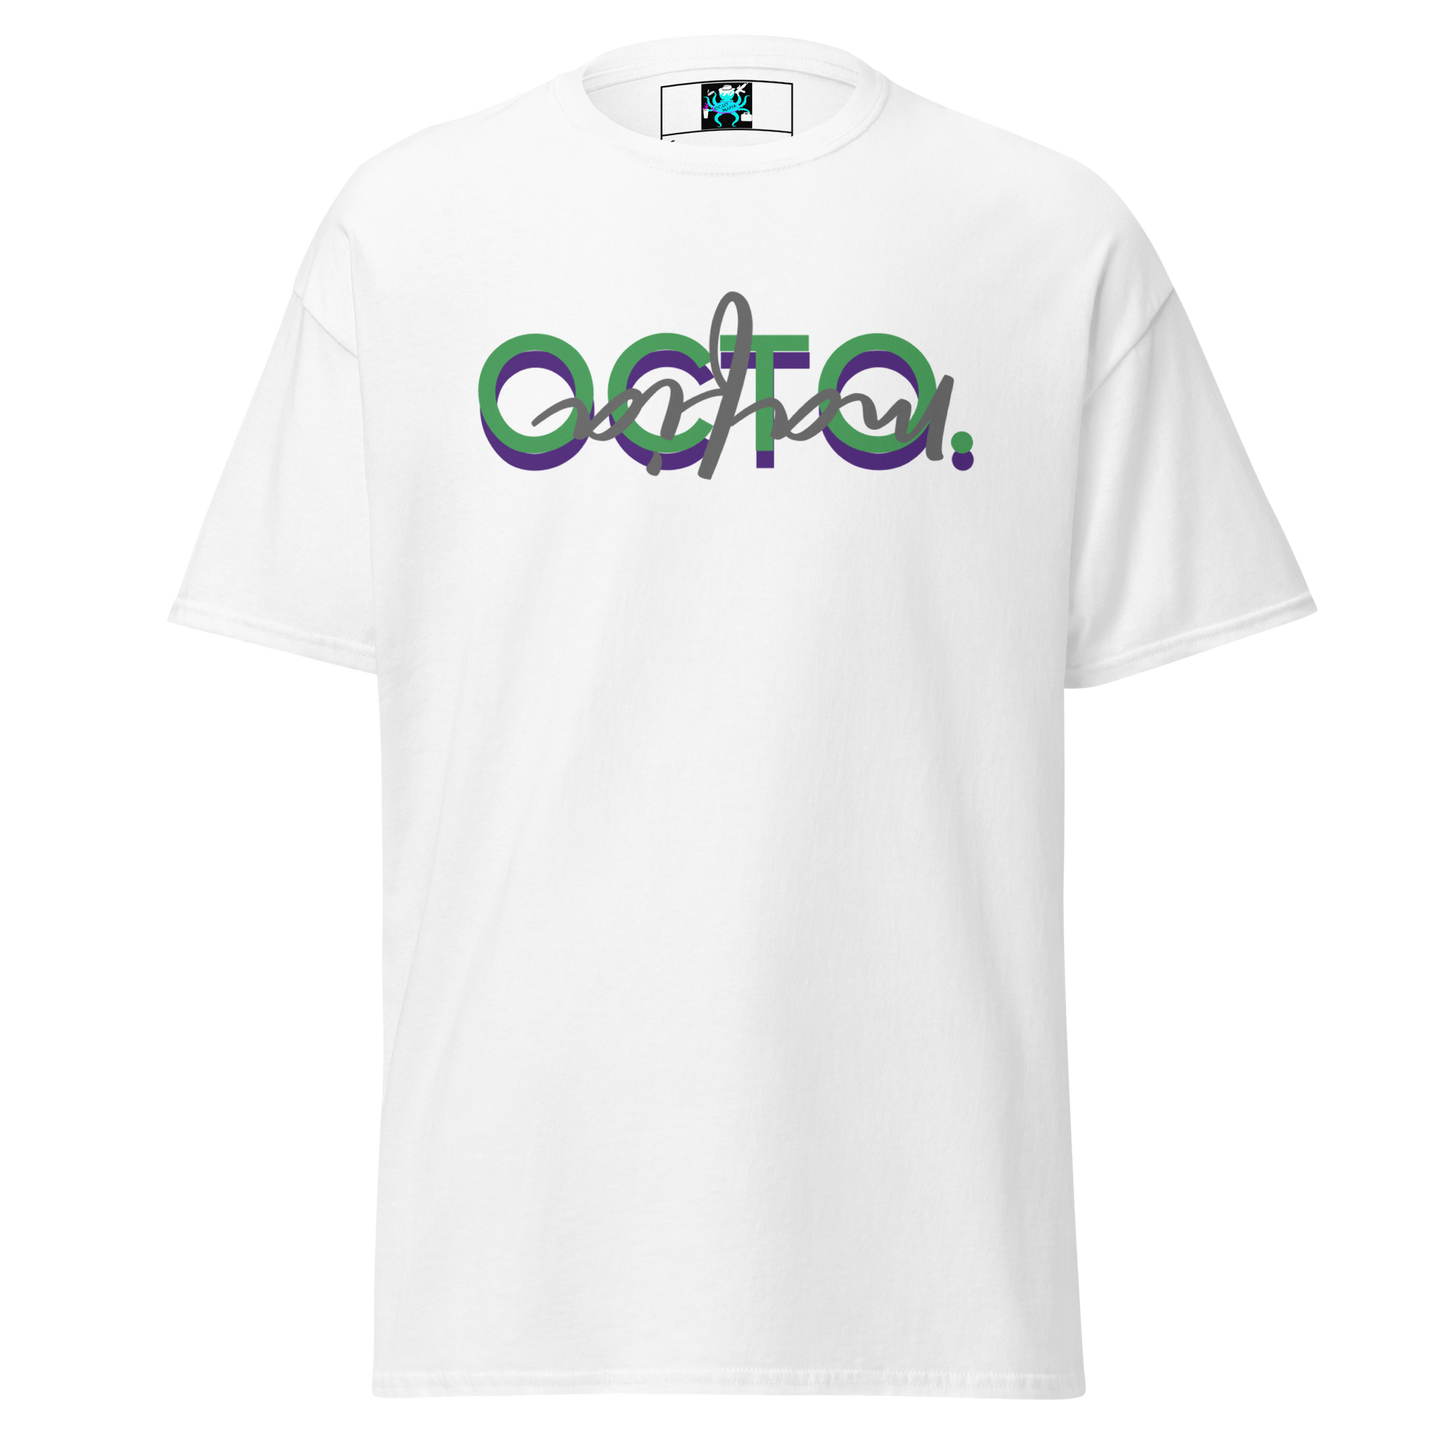 Octo. Mafia "24" T-shirt